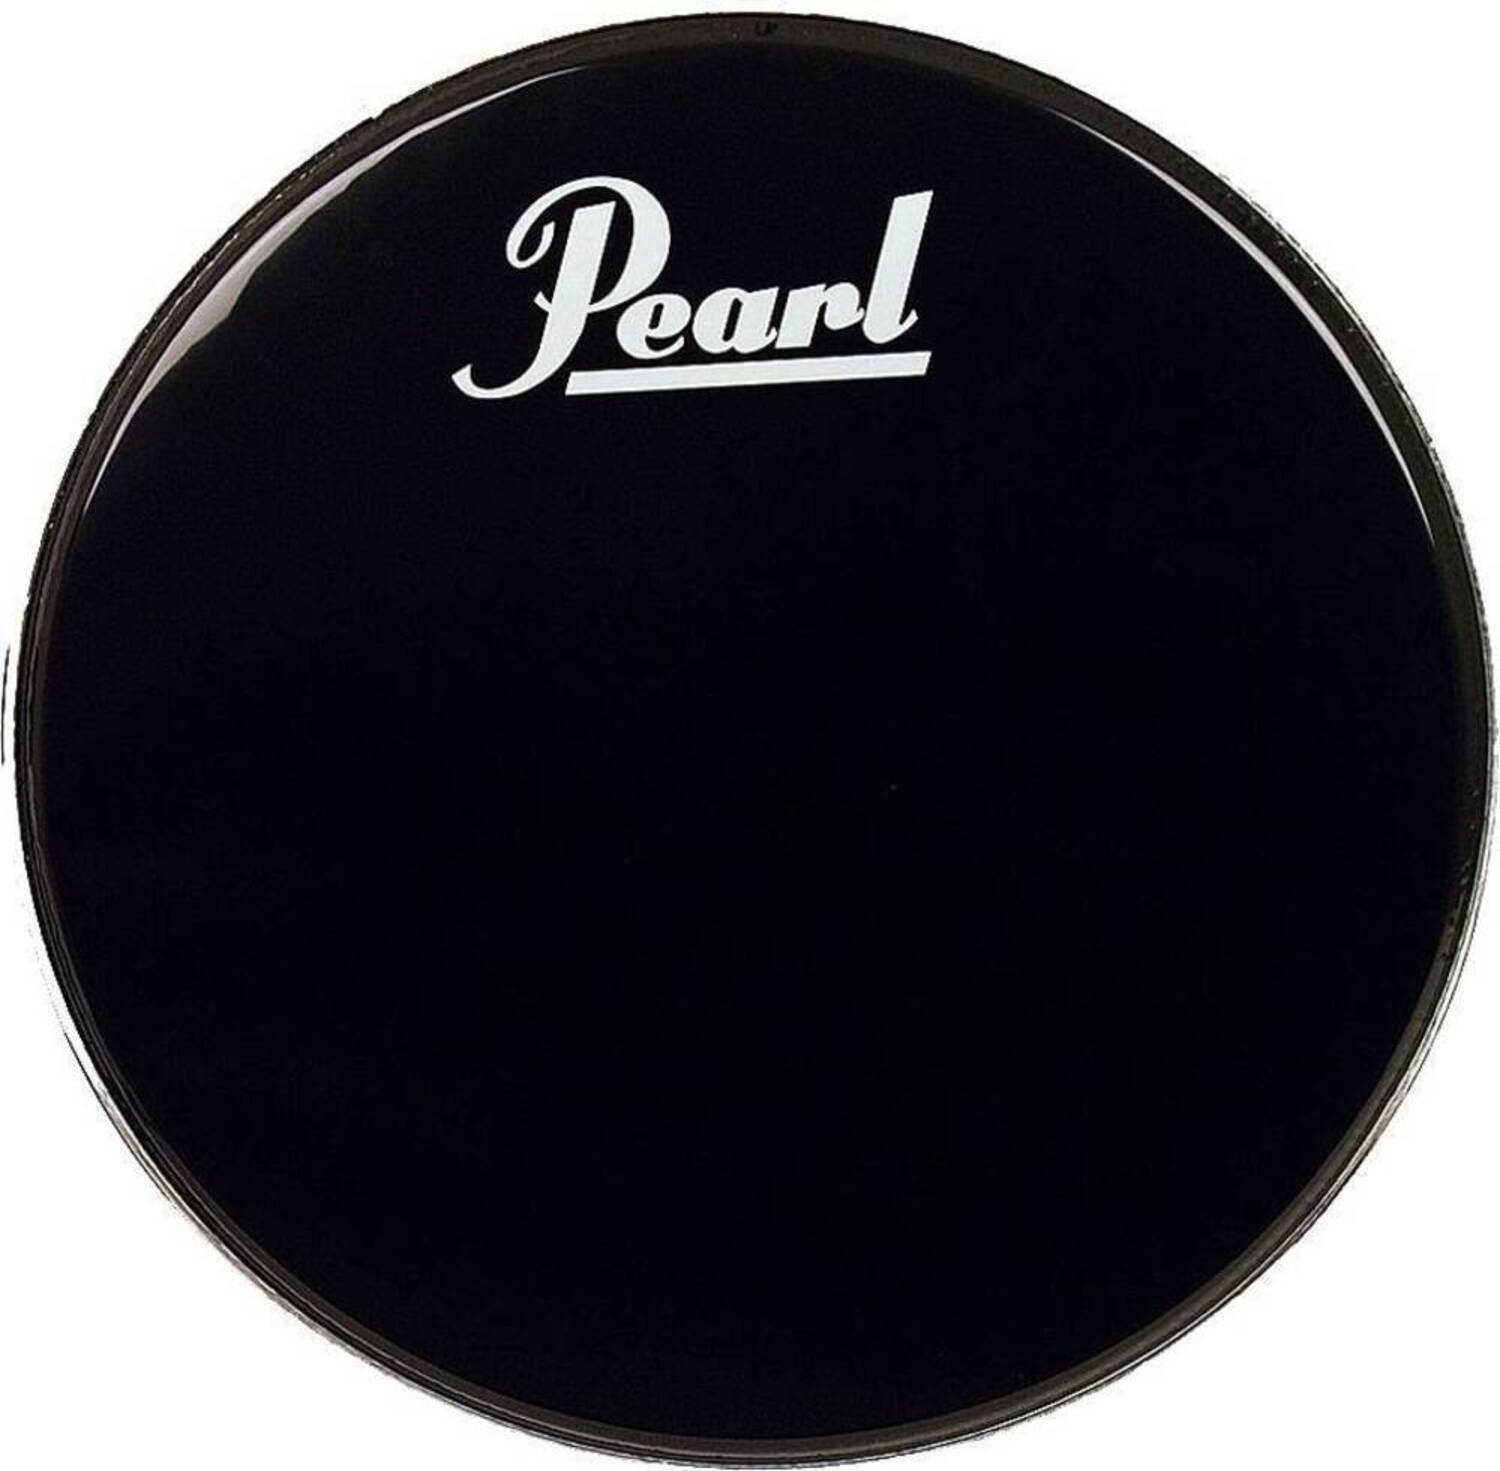 Прочие аксессуары для ударных инструментов Pearl EB-24BDPL стойки для ударных инструментов pearl b 1030c